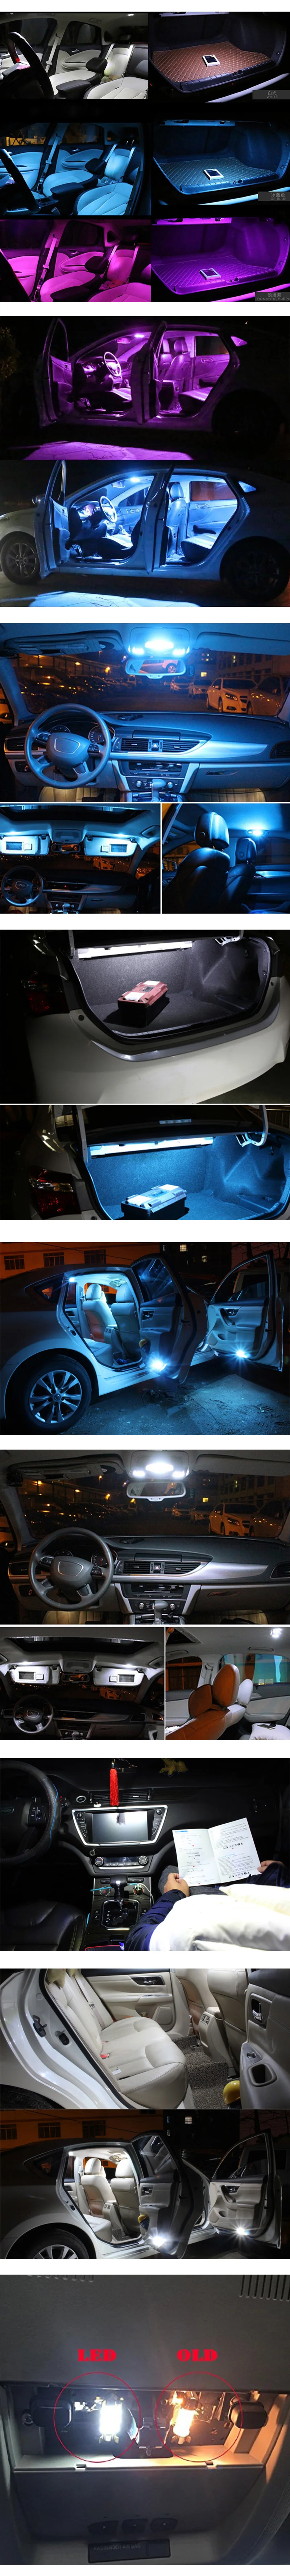 8 шт. белые T10 W5W светодиодные лампы canbus автомобильные лампы внутренняя посылка комплект для Subaru Forester 2003-2006 2007 2008 Карта Купол багажник светильник